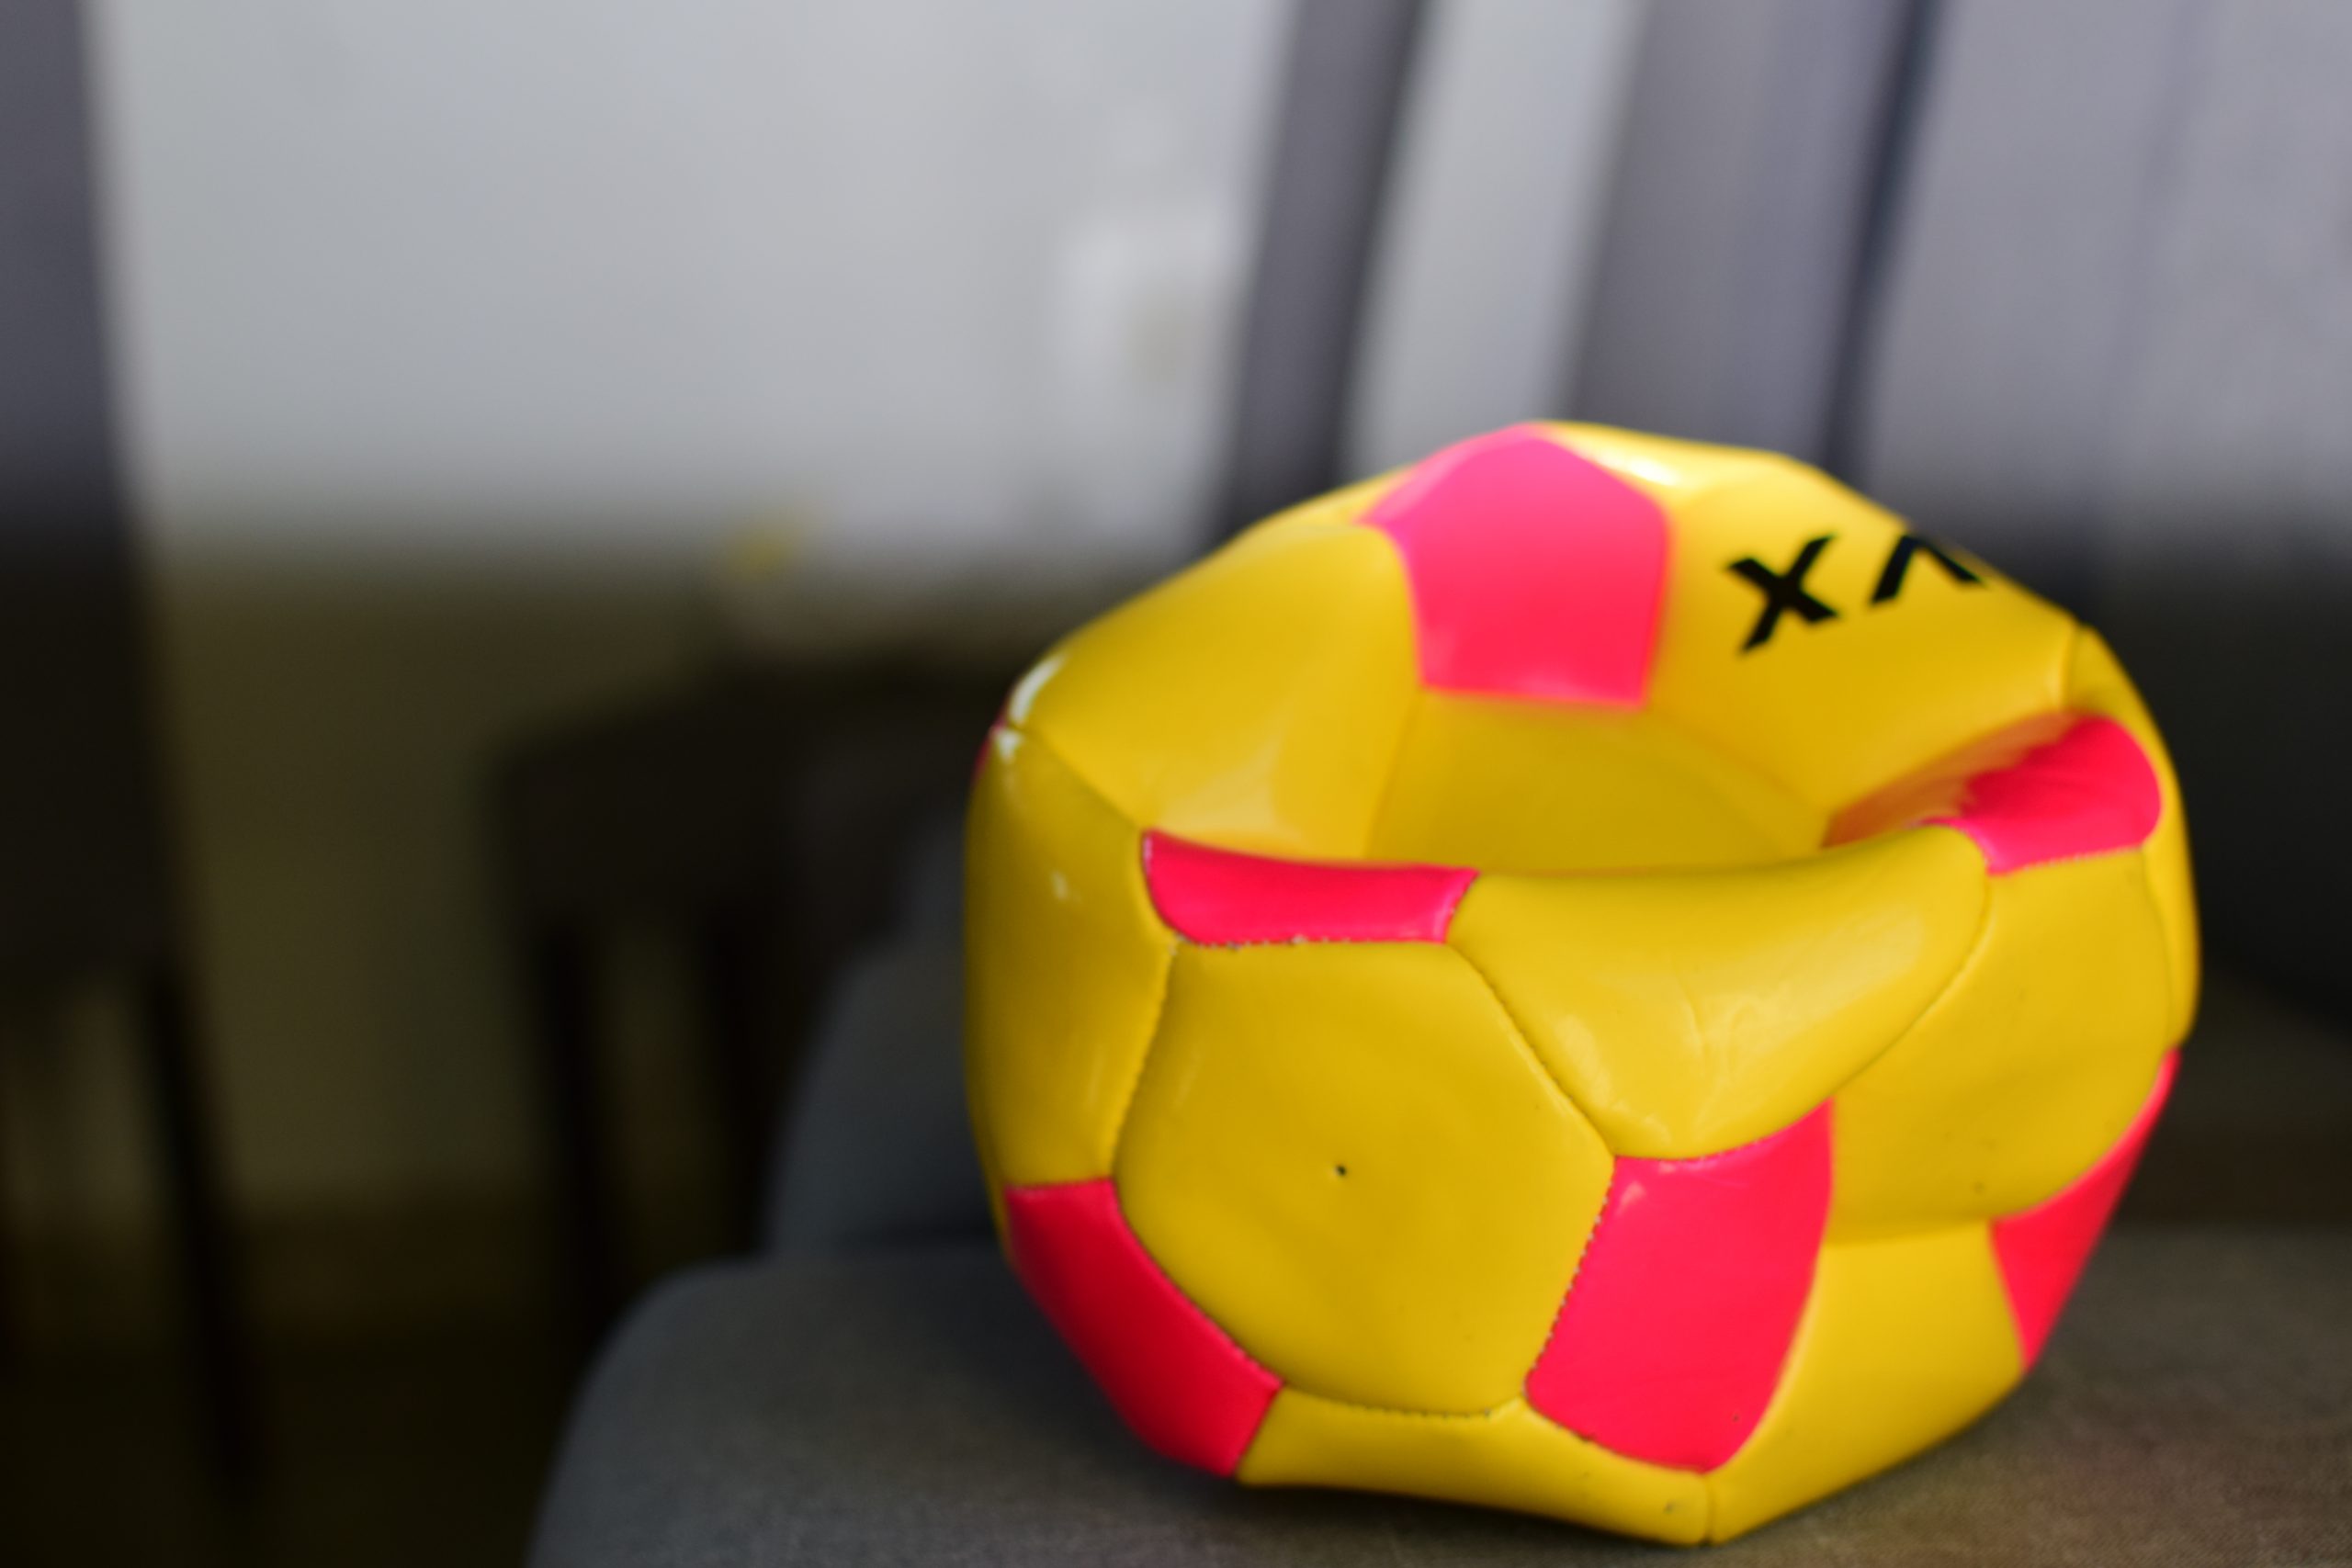 Deflated ball